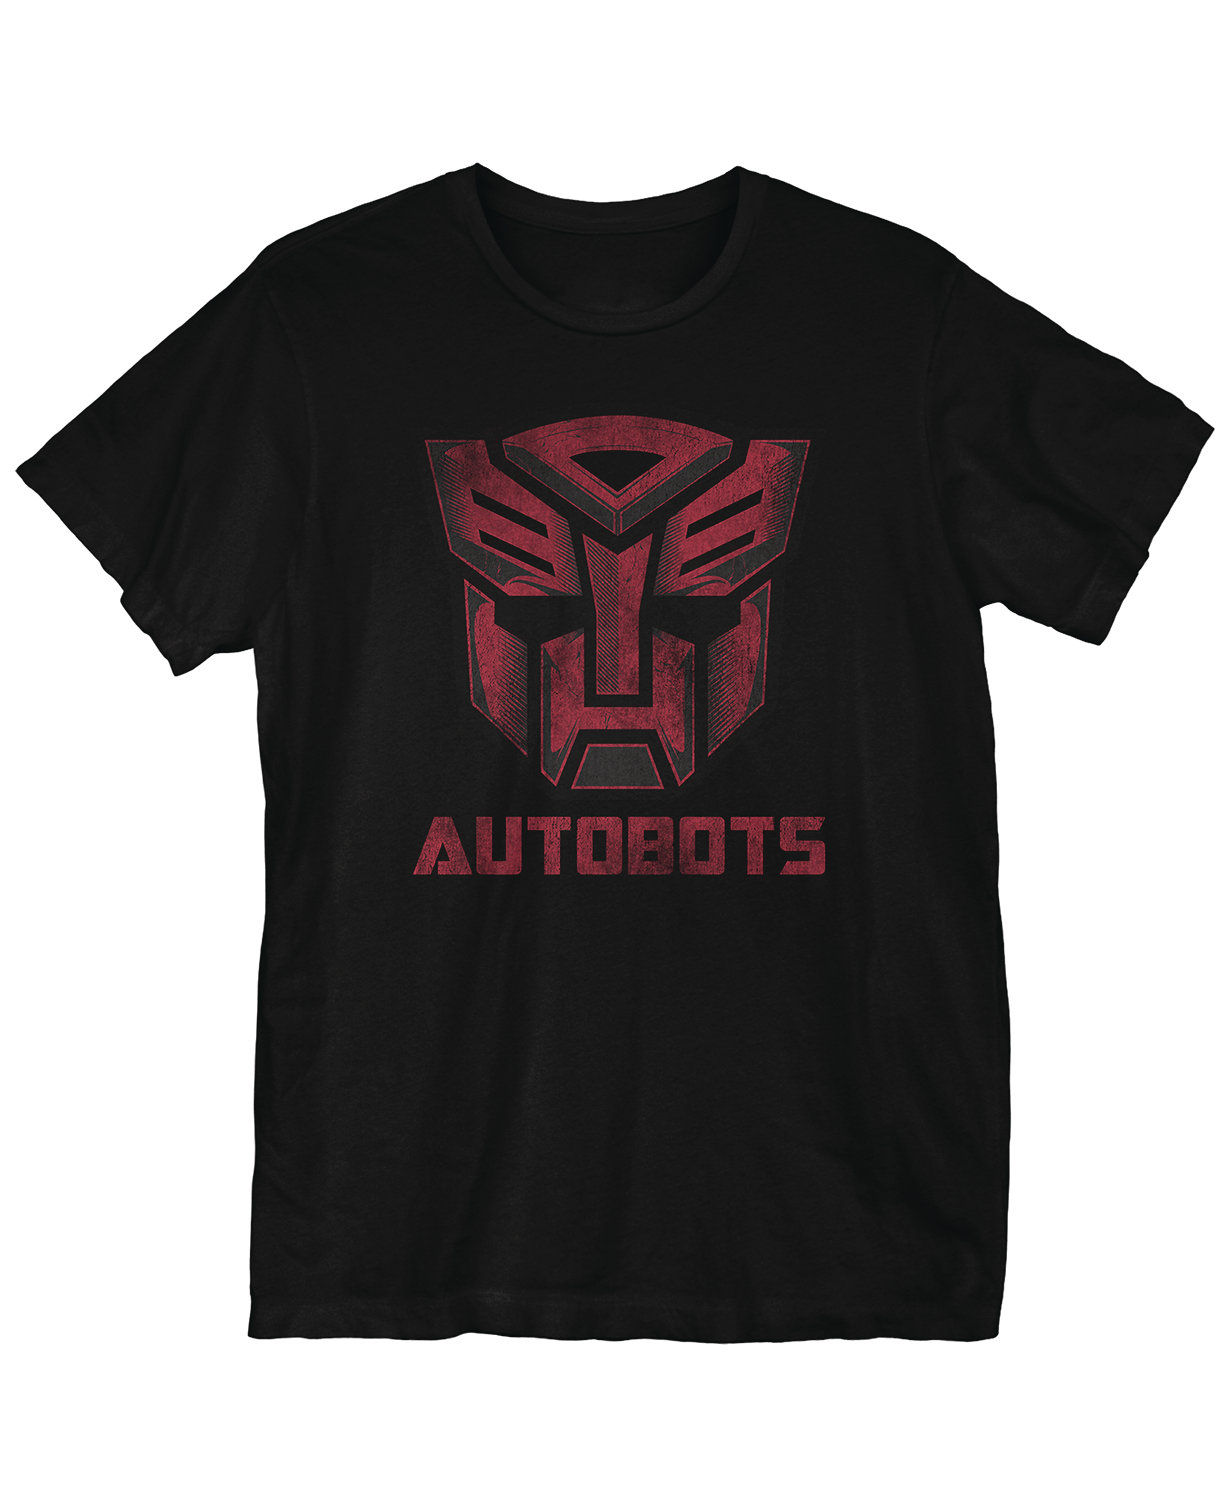 Transformers Bots Meets The Eye T-Shirt XL